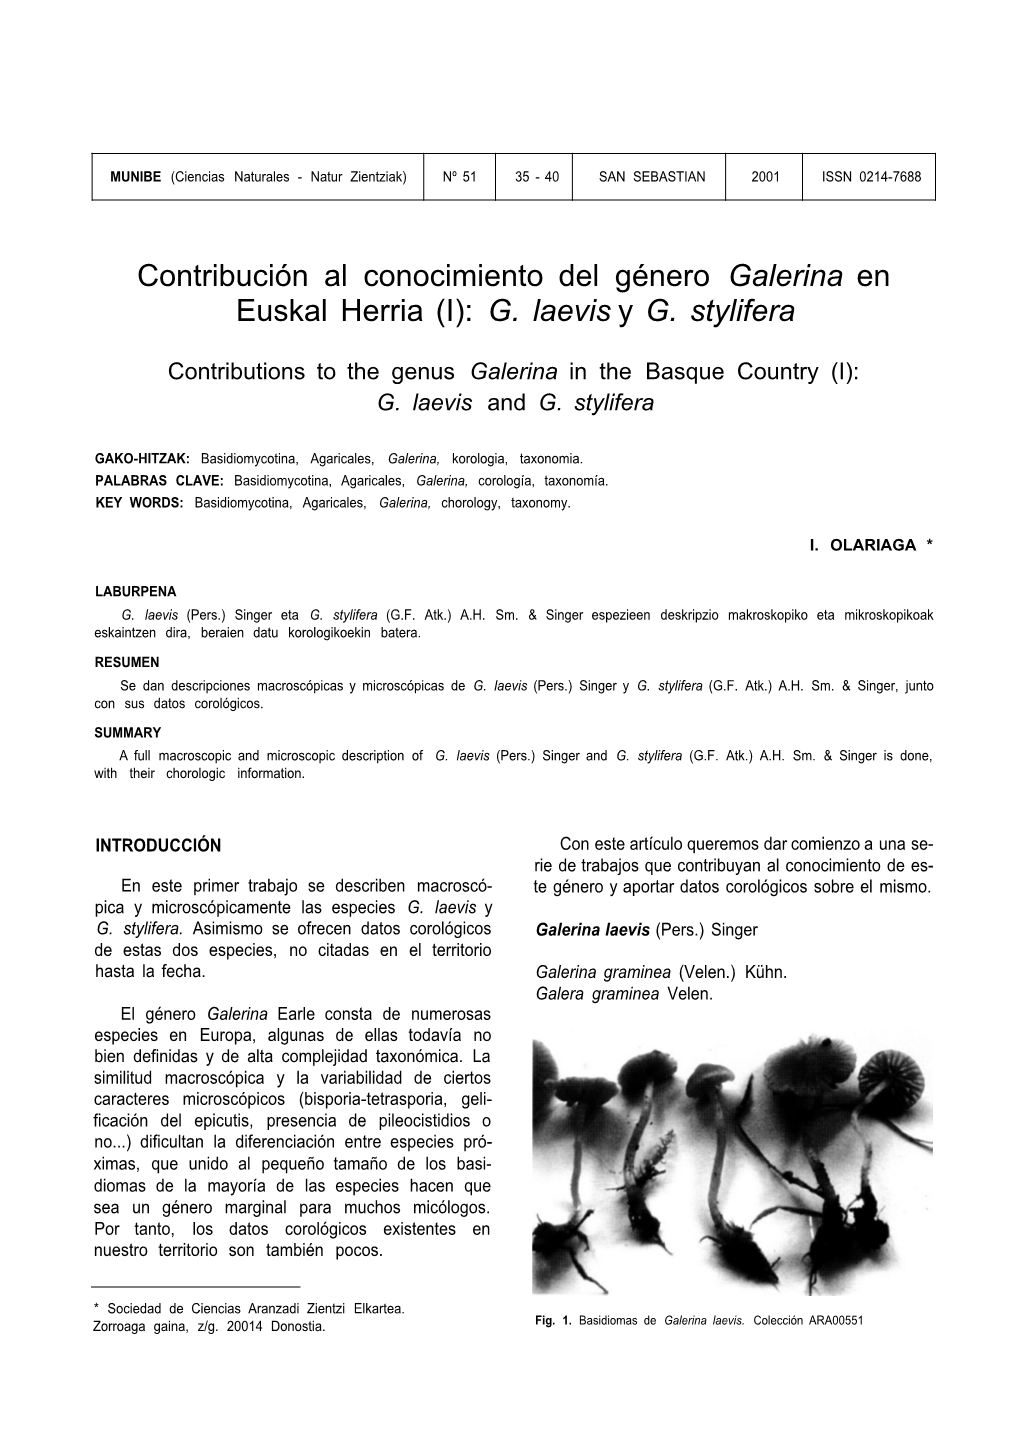 Contribución Al Conocimiento Del Género Galerina En Euskal Herria (I): G